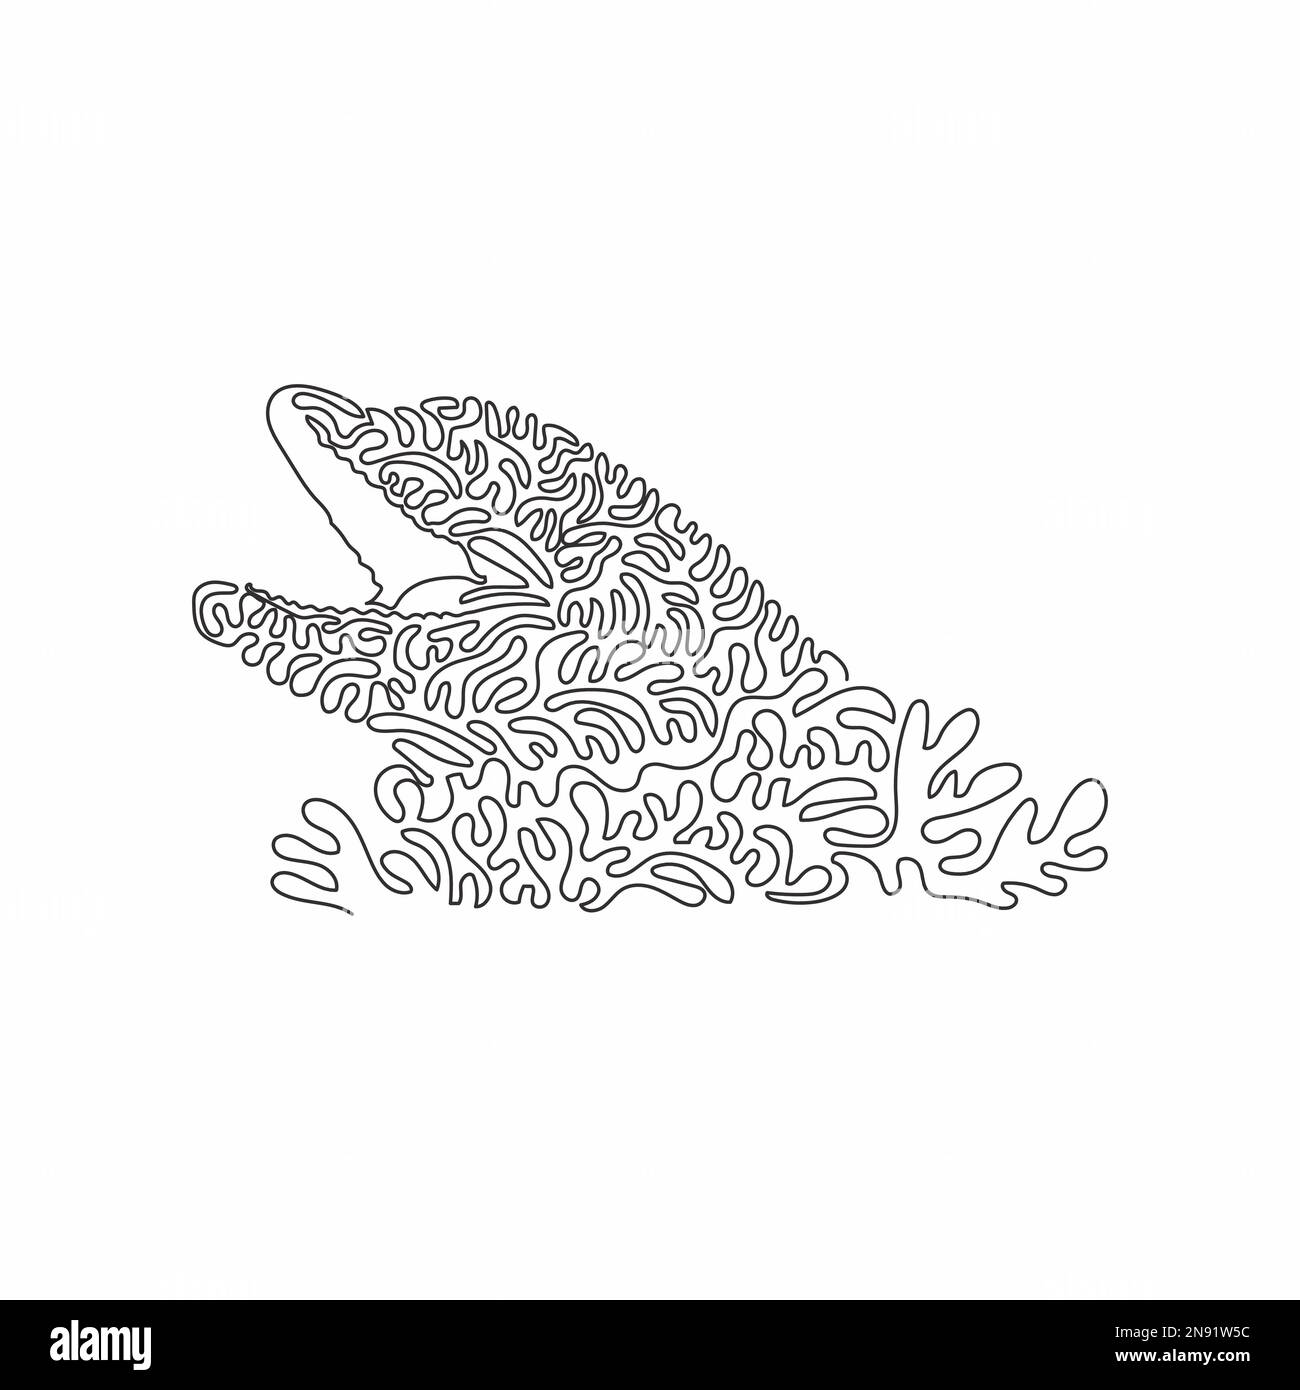 Disegno a linea continua a spirale singola di carino delfino astratto Disegno a linea continua disegno vettoriale stile di illustrazione adorabile collo di bottiglia Illustrazione Vettoriale